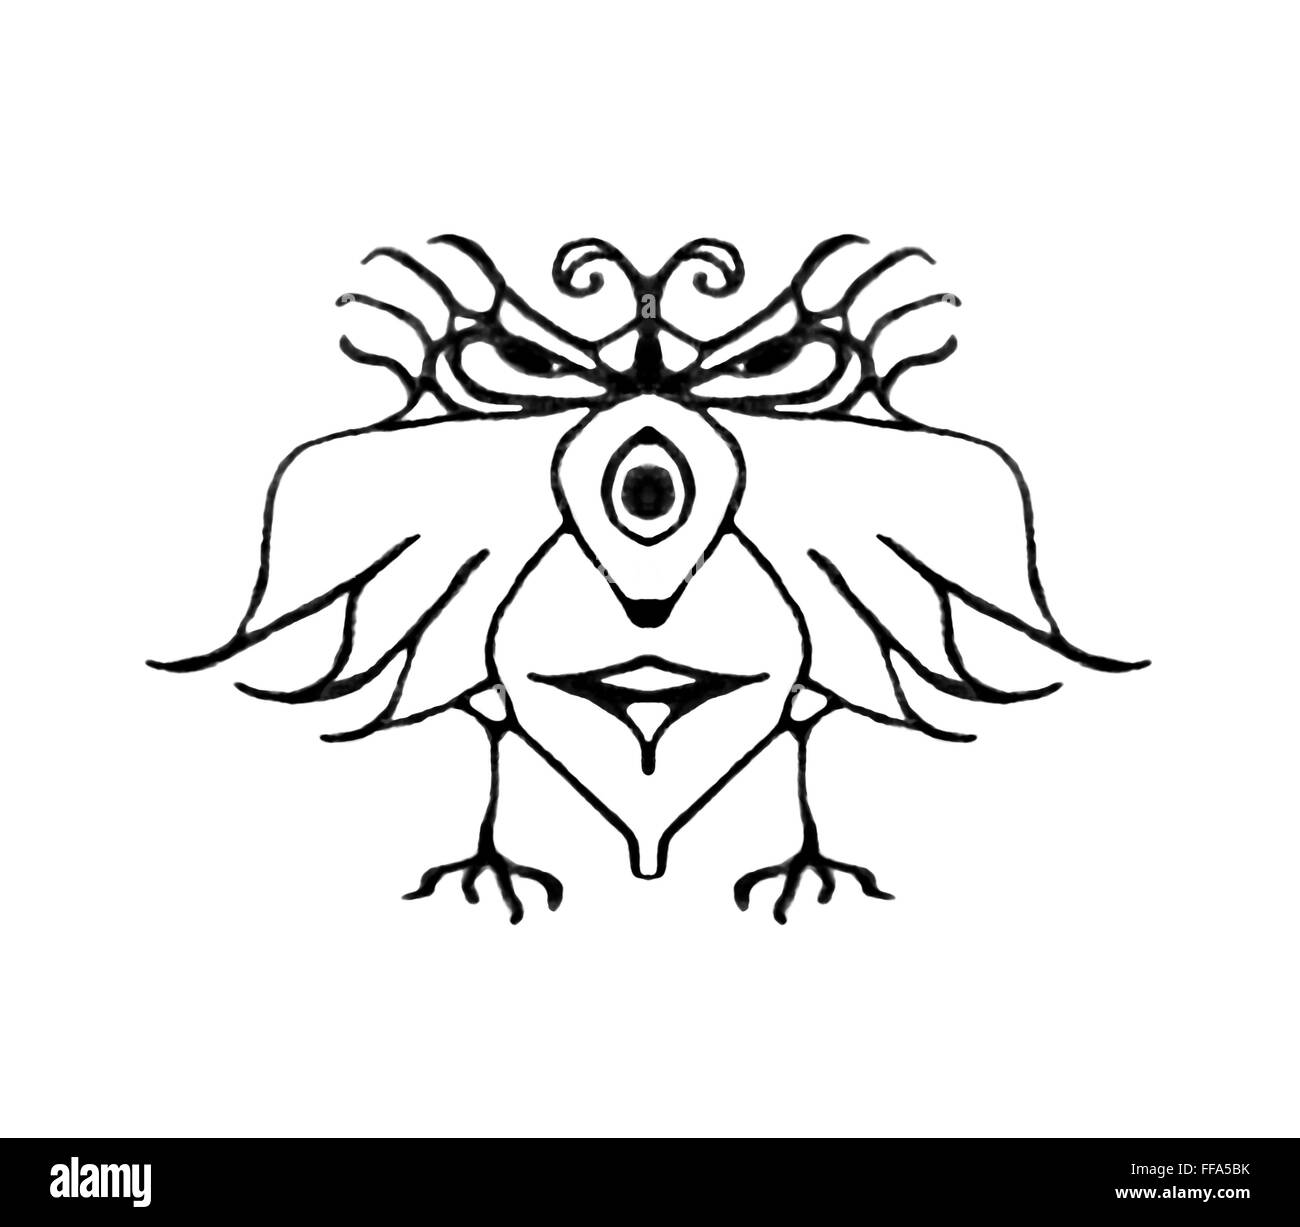 Dessin au crayon noir et blanc fantaisie technique oiseau avec la colère ou l'expression grave isolé en fond blanc. Banque D'Images